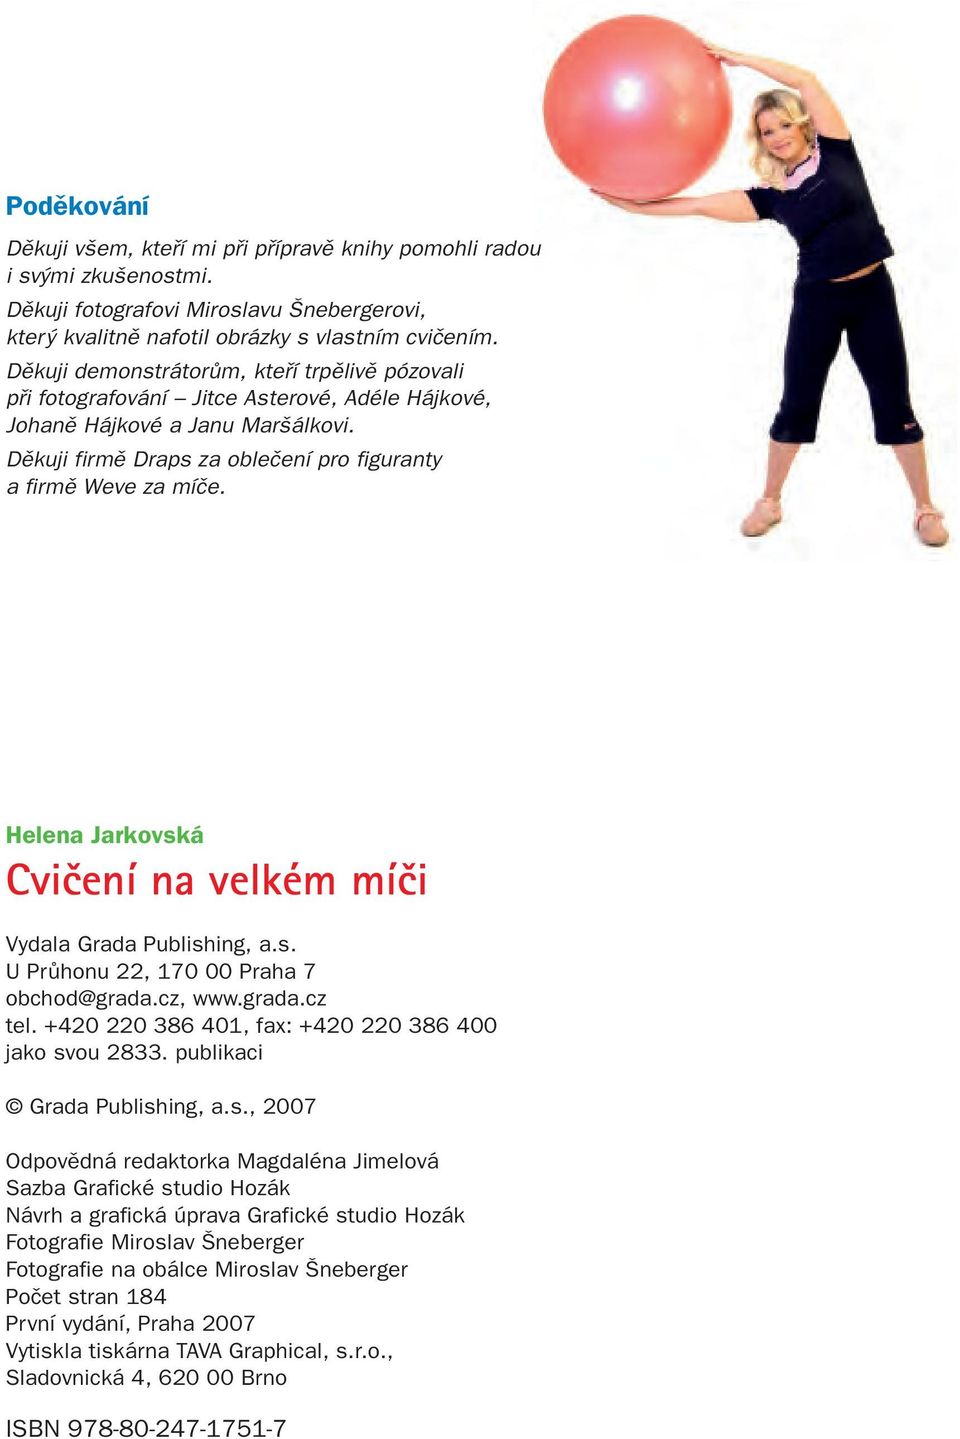 Helena Jarkovská Cvičení na velkém míči Vydala Grada Publishing, a.s. U Průhonu 22, 170 00 Praha 7 obchod@grada.cz, www.grada.cz tel. +420 220 386 401, fax: +420 220 386 400 jako svou 2833.